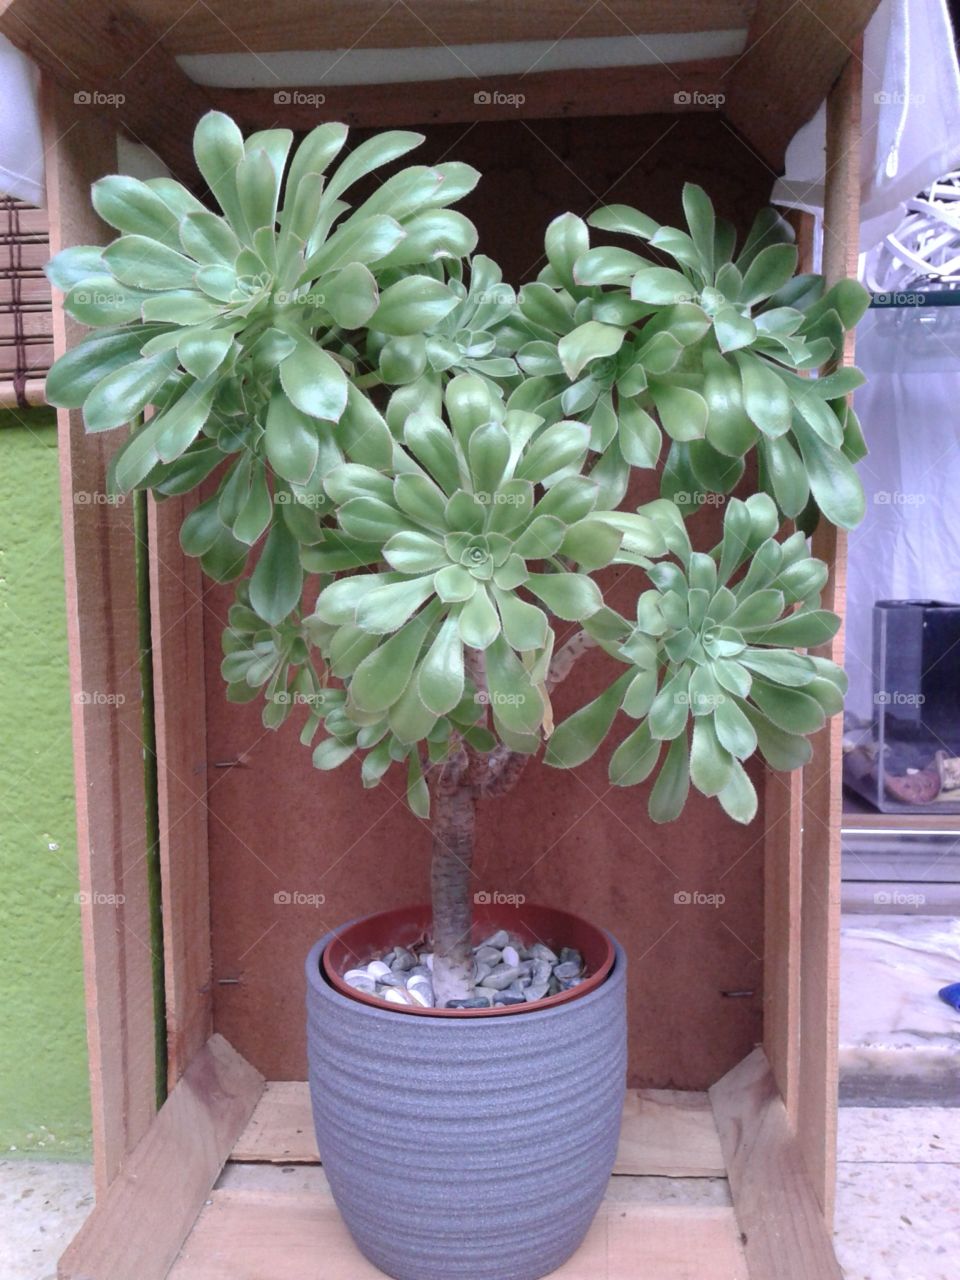 My plant <3